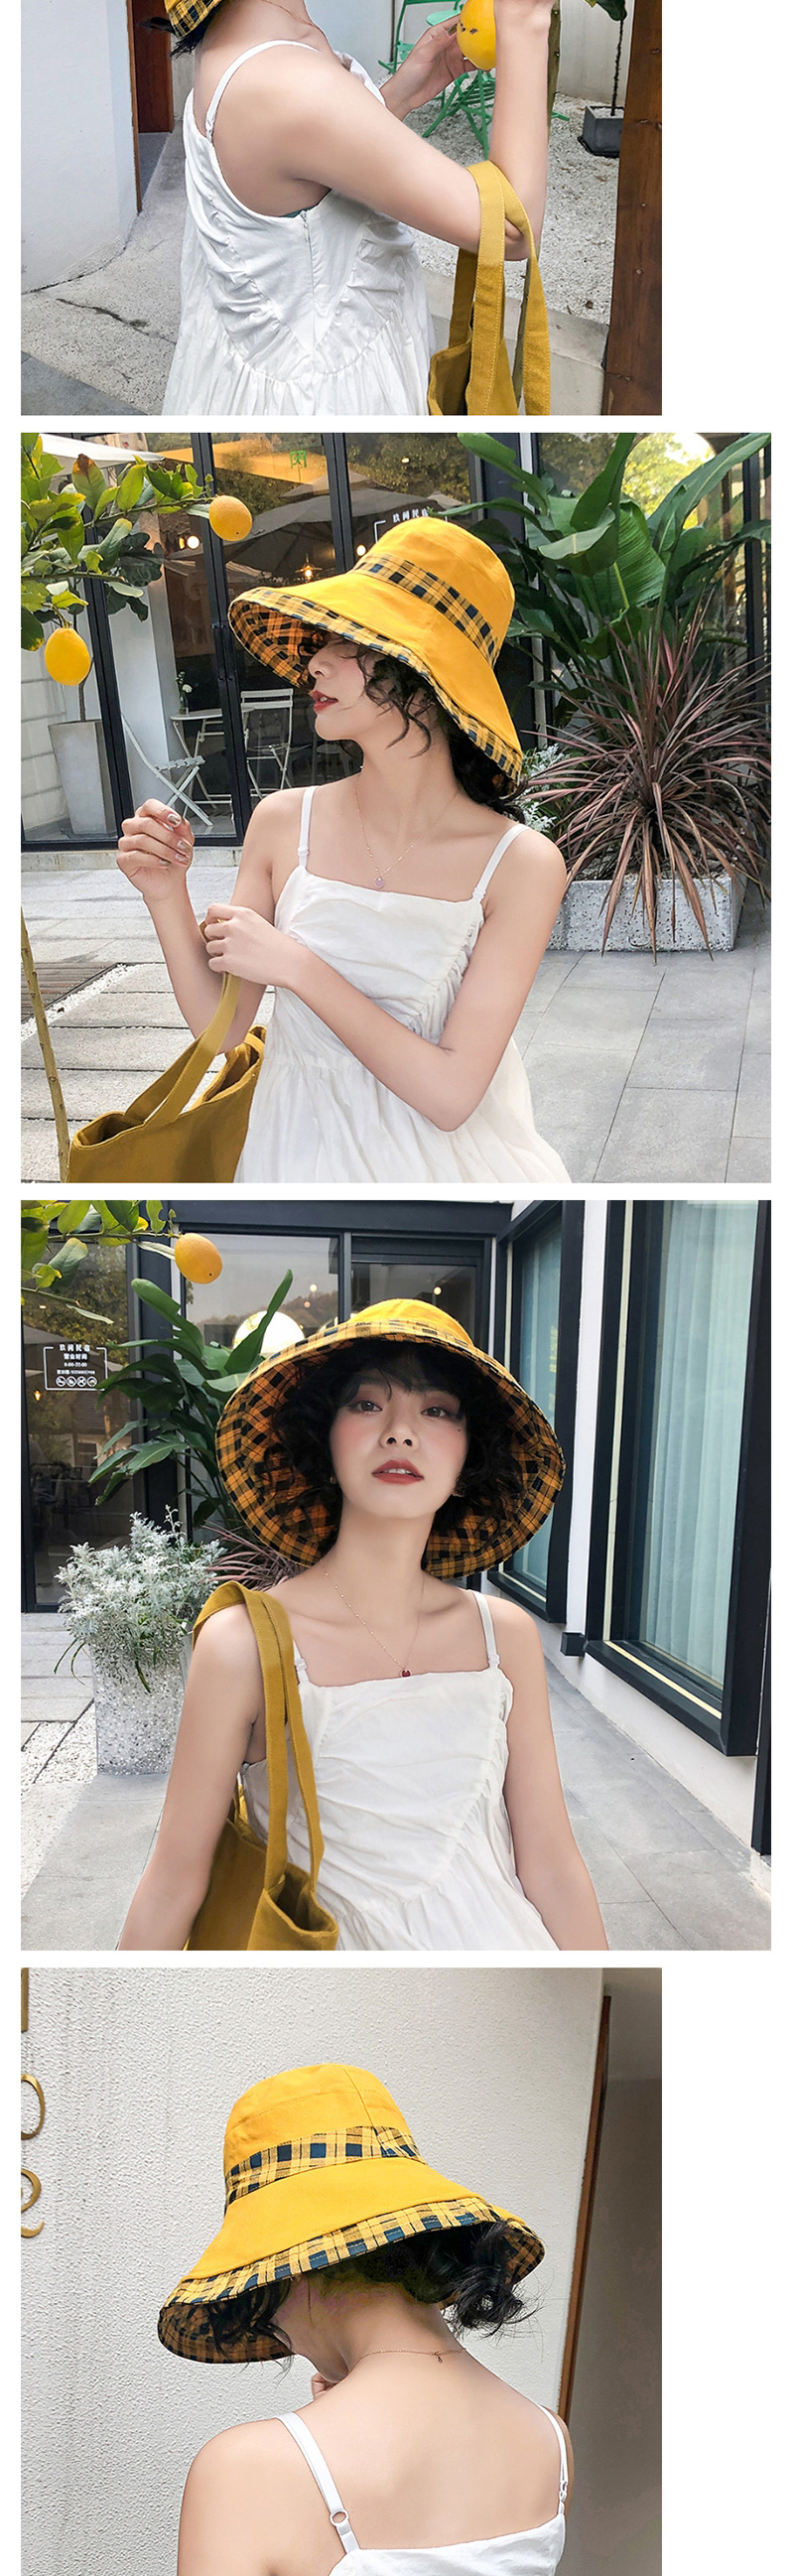 Fashion Beige Double-sided Wear Plaid Hat,Sun Hats